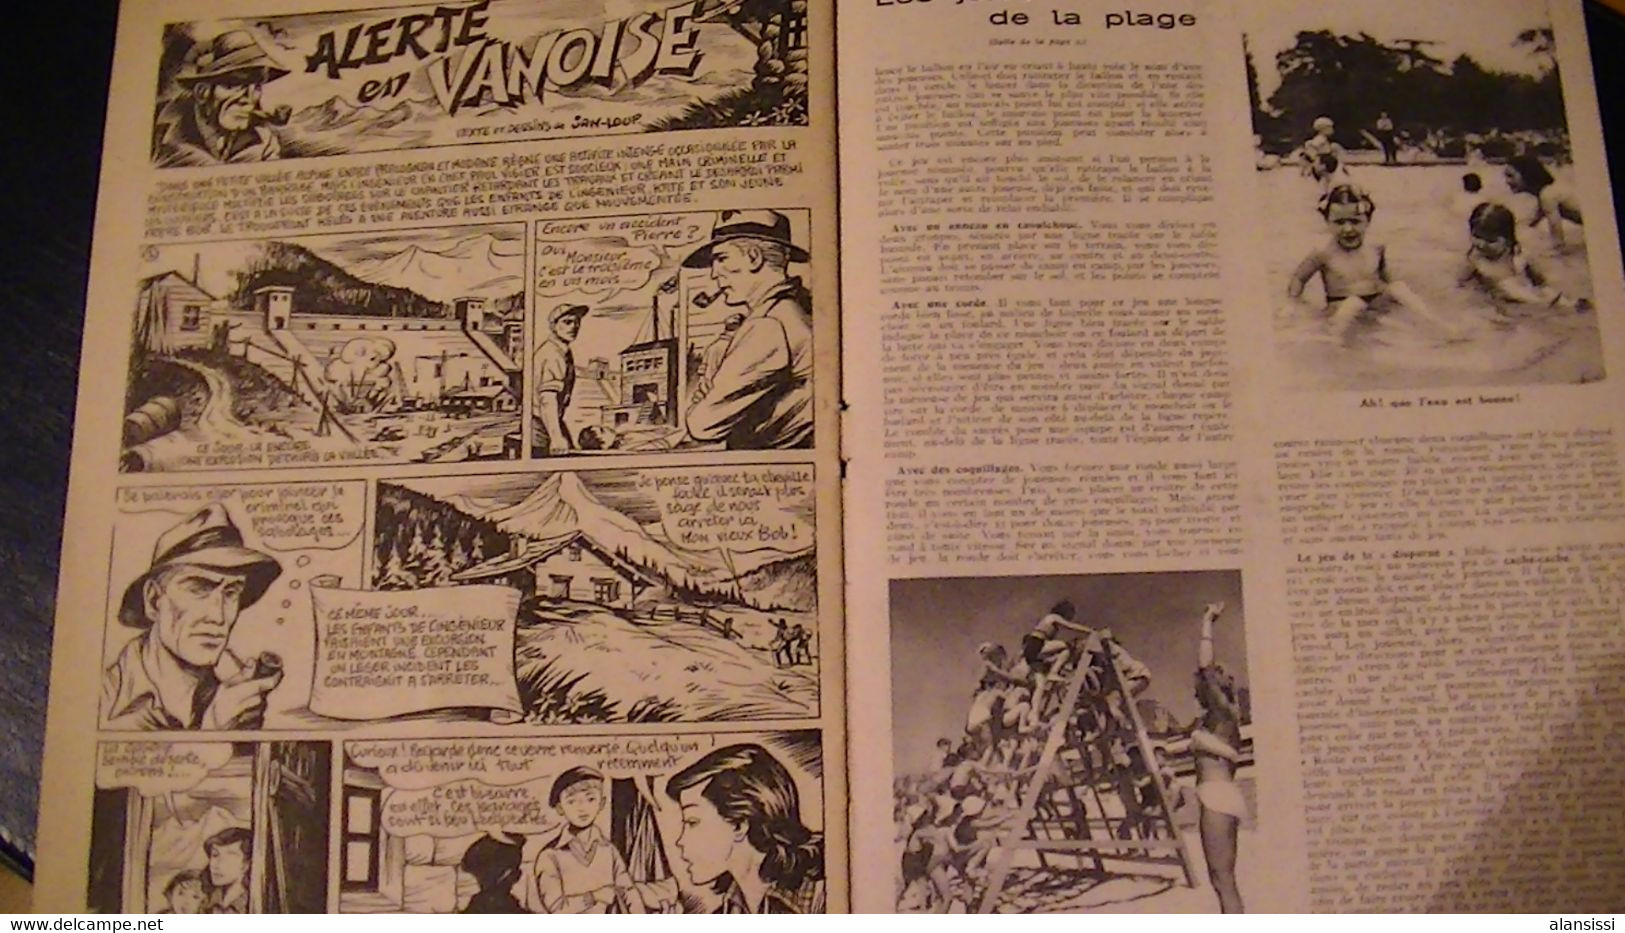 Lisette N° 33 Année 1954  20 pages Photos voir autres numéros